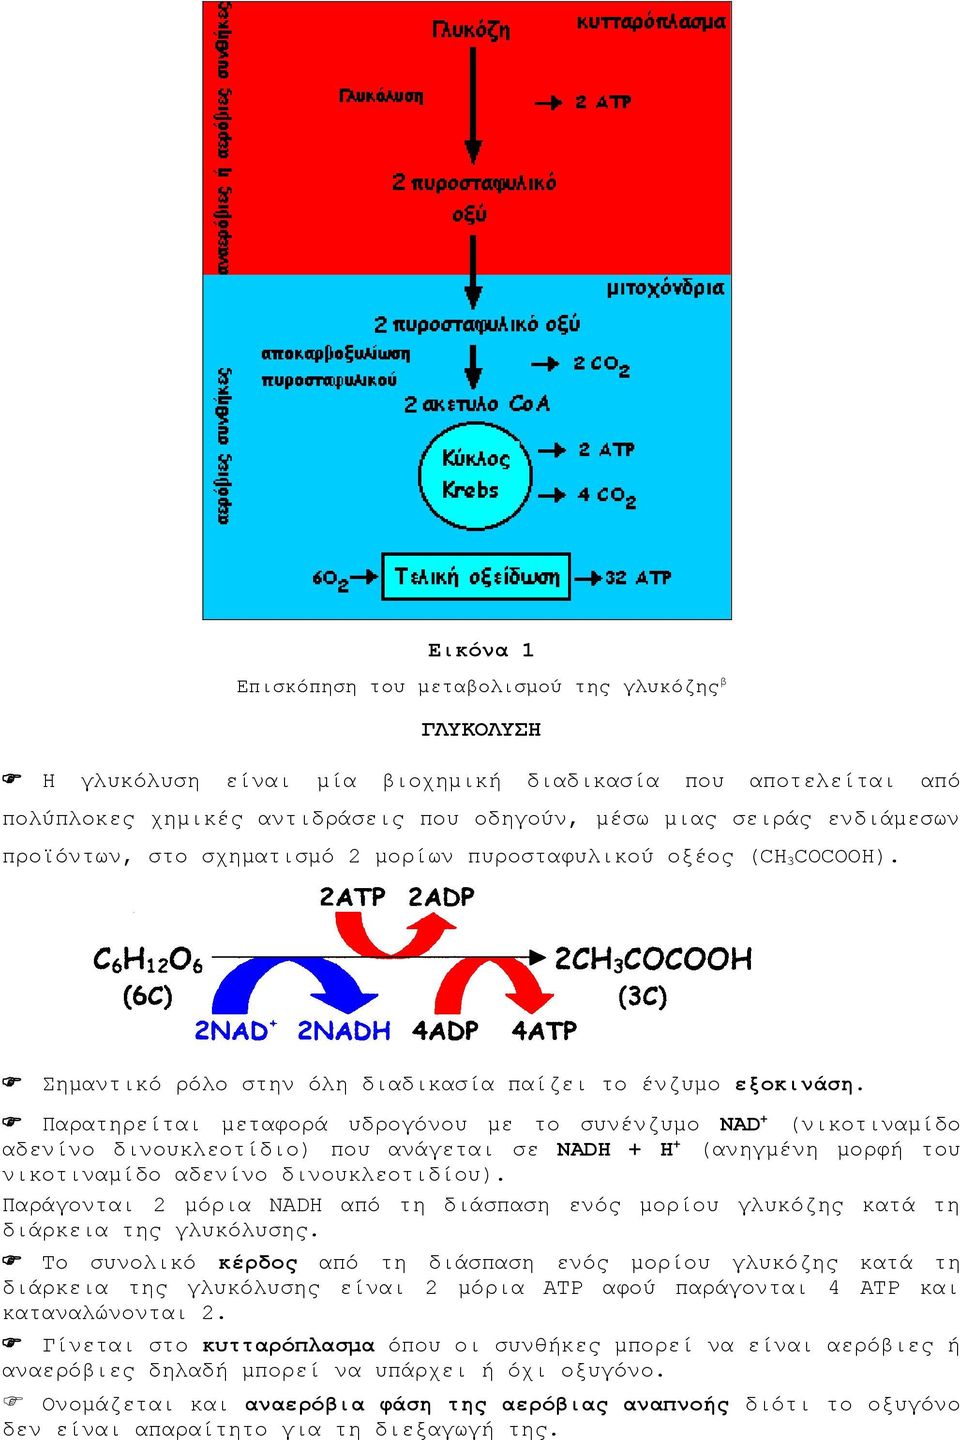 Παρατηρείται μεταφορά υδρογόνου με το συνένζυμο NAD + (νικοτιναμίδο αδενίνο δινουκλεοτίδιο) που ανάγεται σε NADH + Η + (ανηγμένη μορφή του νικοτιναμίδο αδενίνο δινουκλεοτιδίου).